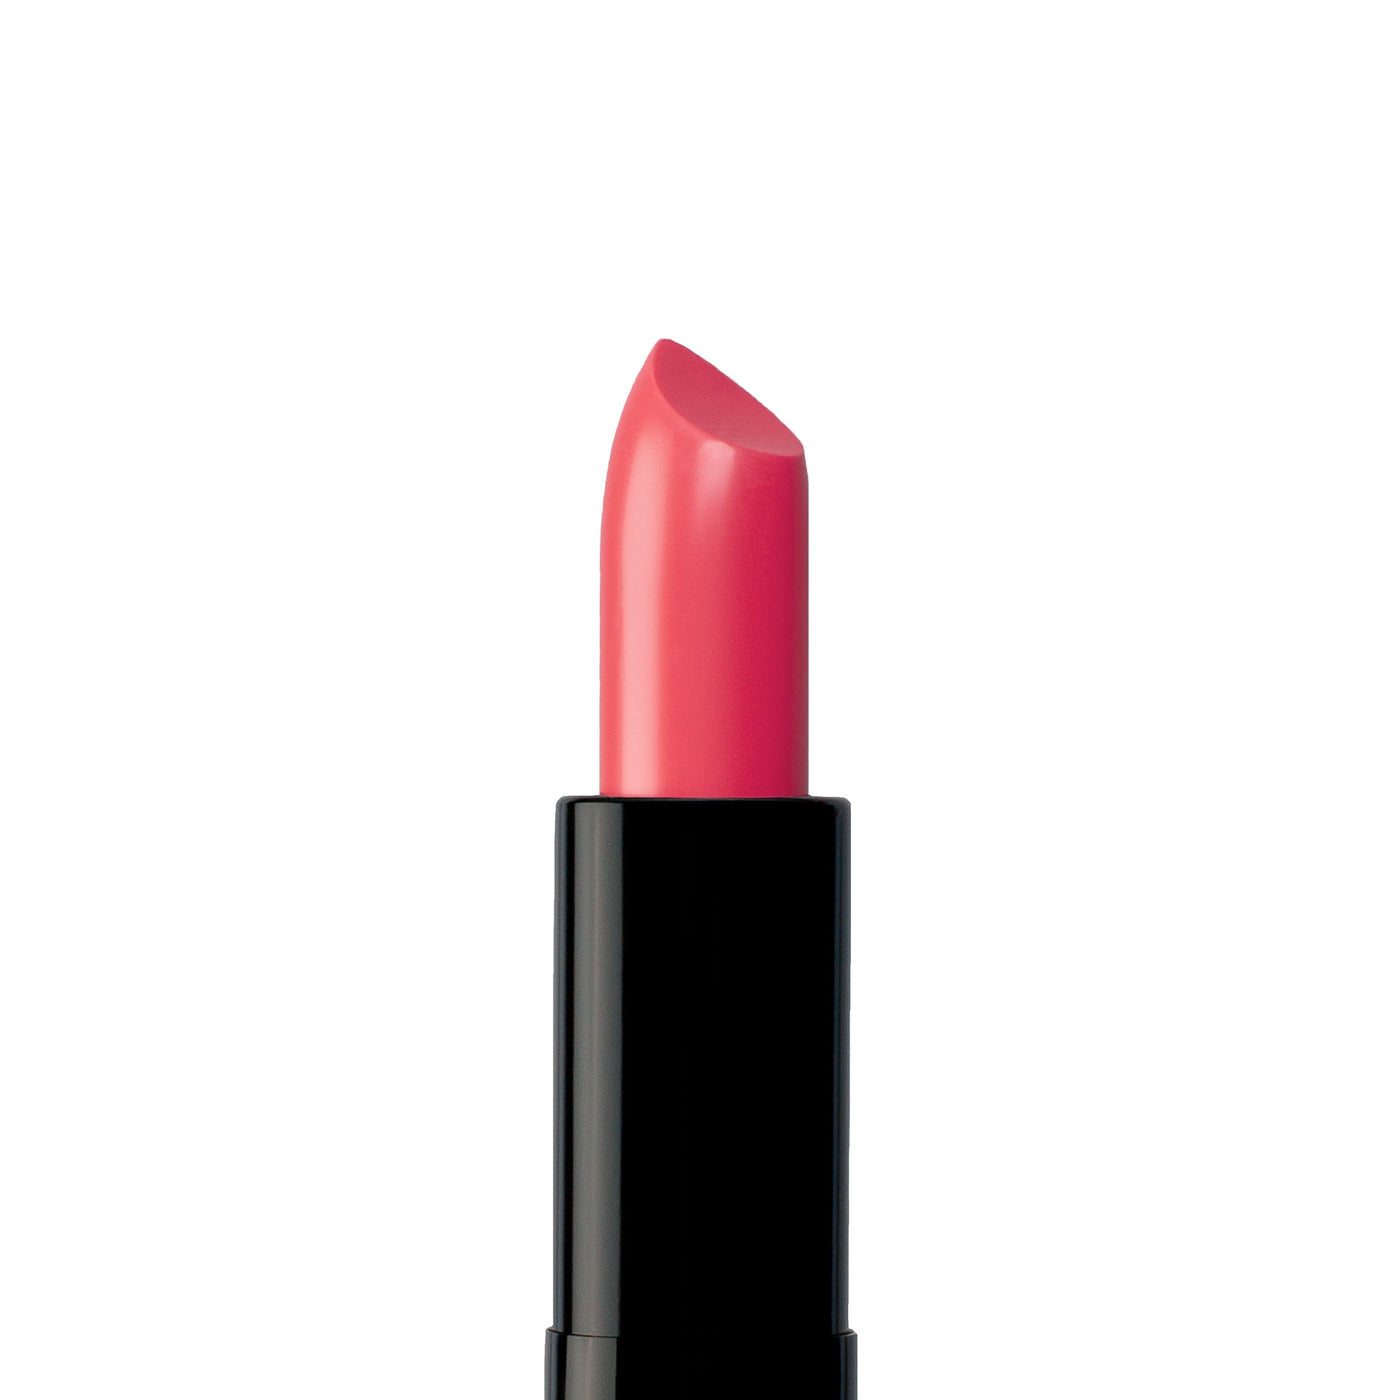 Sweetheart - Luxury Balm Lipstick